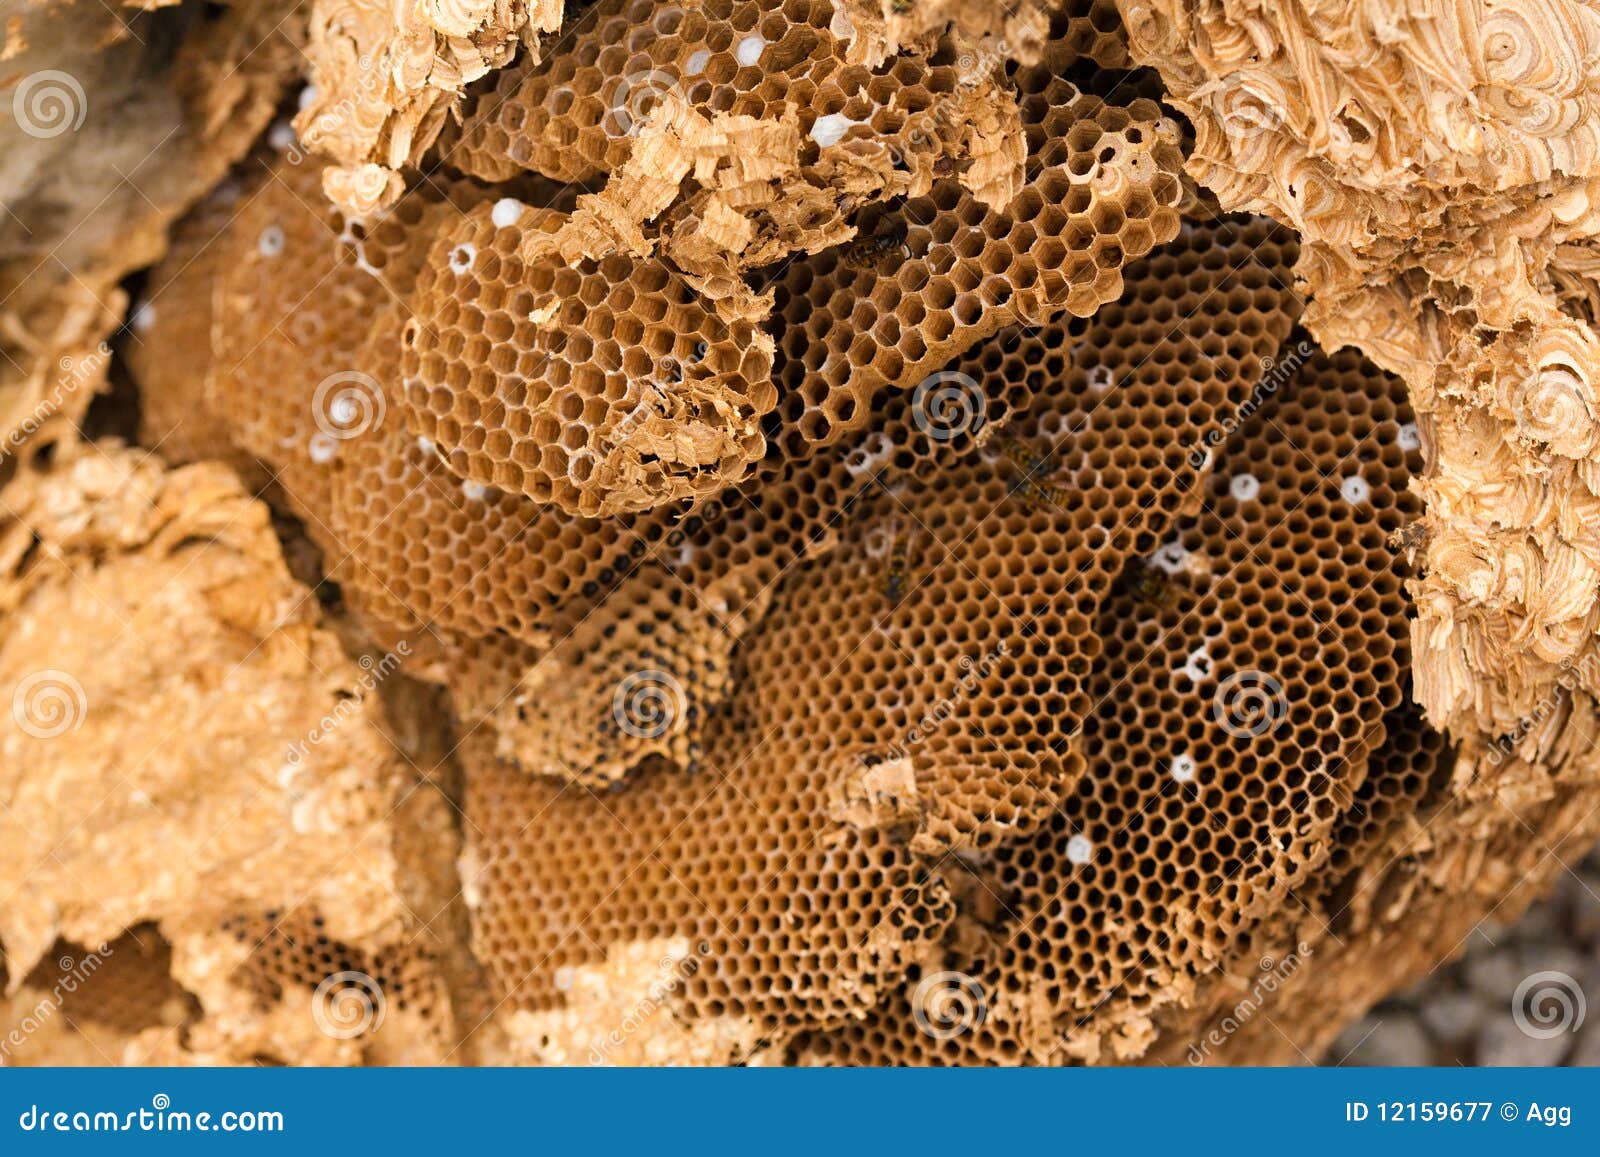 clip art hornets nest - photo #50